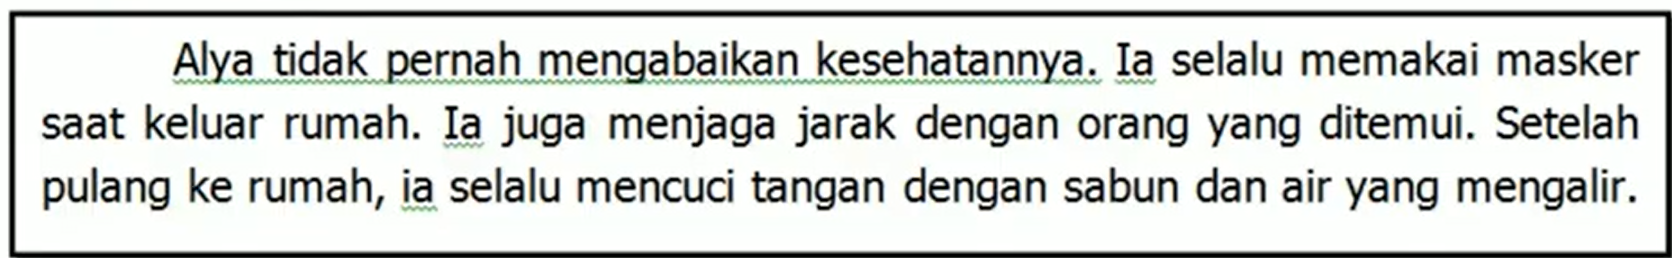 Contoh Latihan Soal Ujian Sekolah Bahasa Indonesia Kelas 6 SD K13, Full Prediksi Jawaban 2021-2022